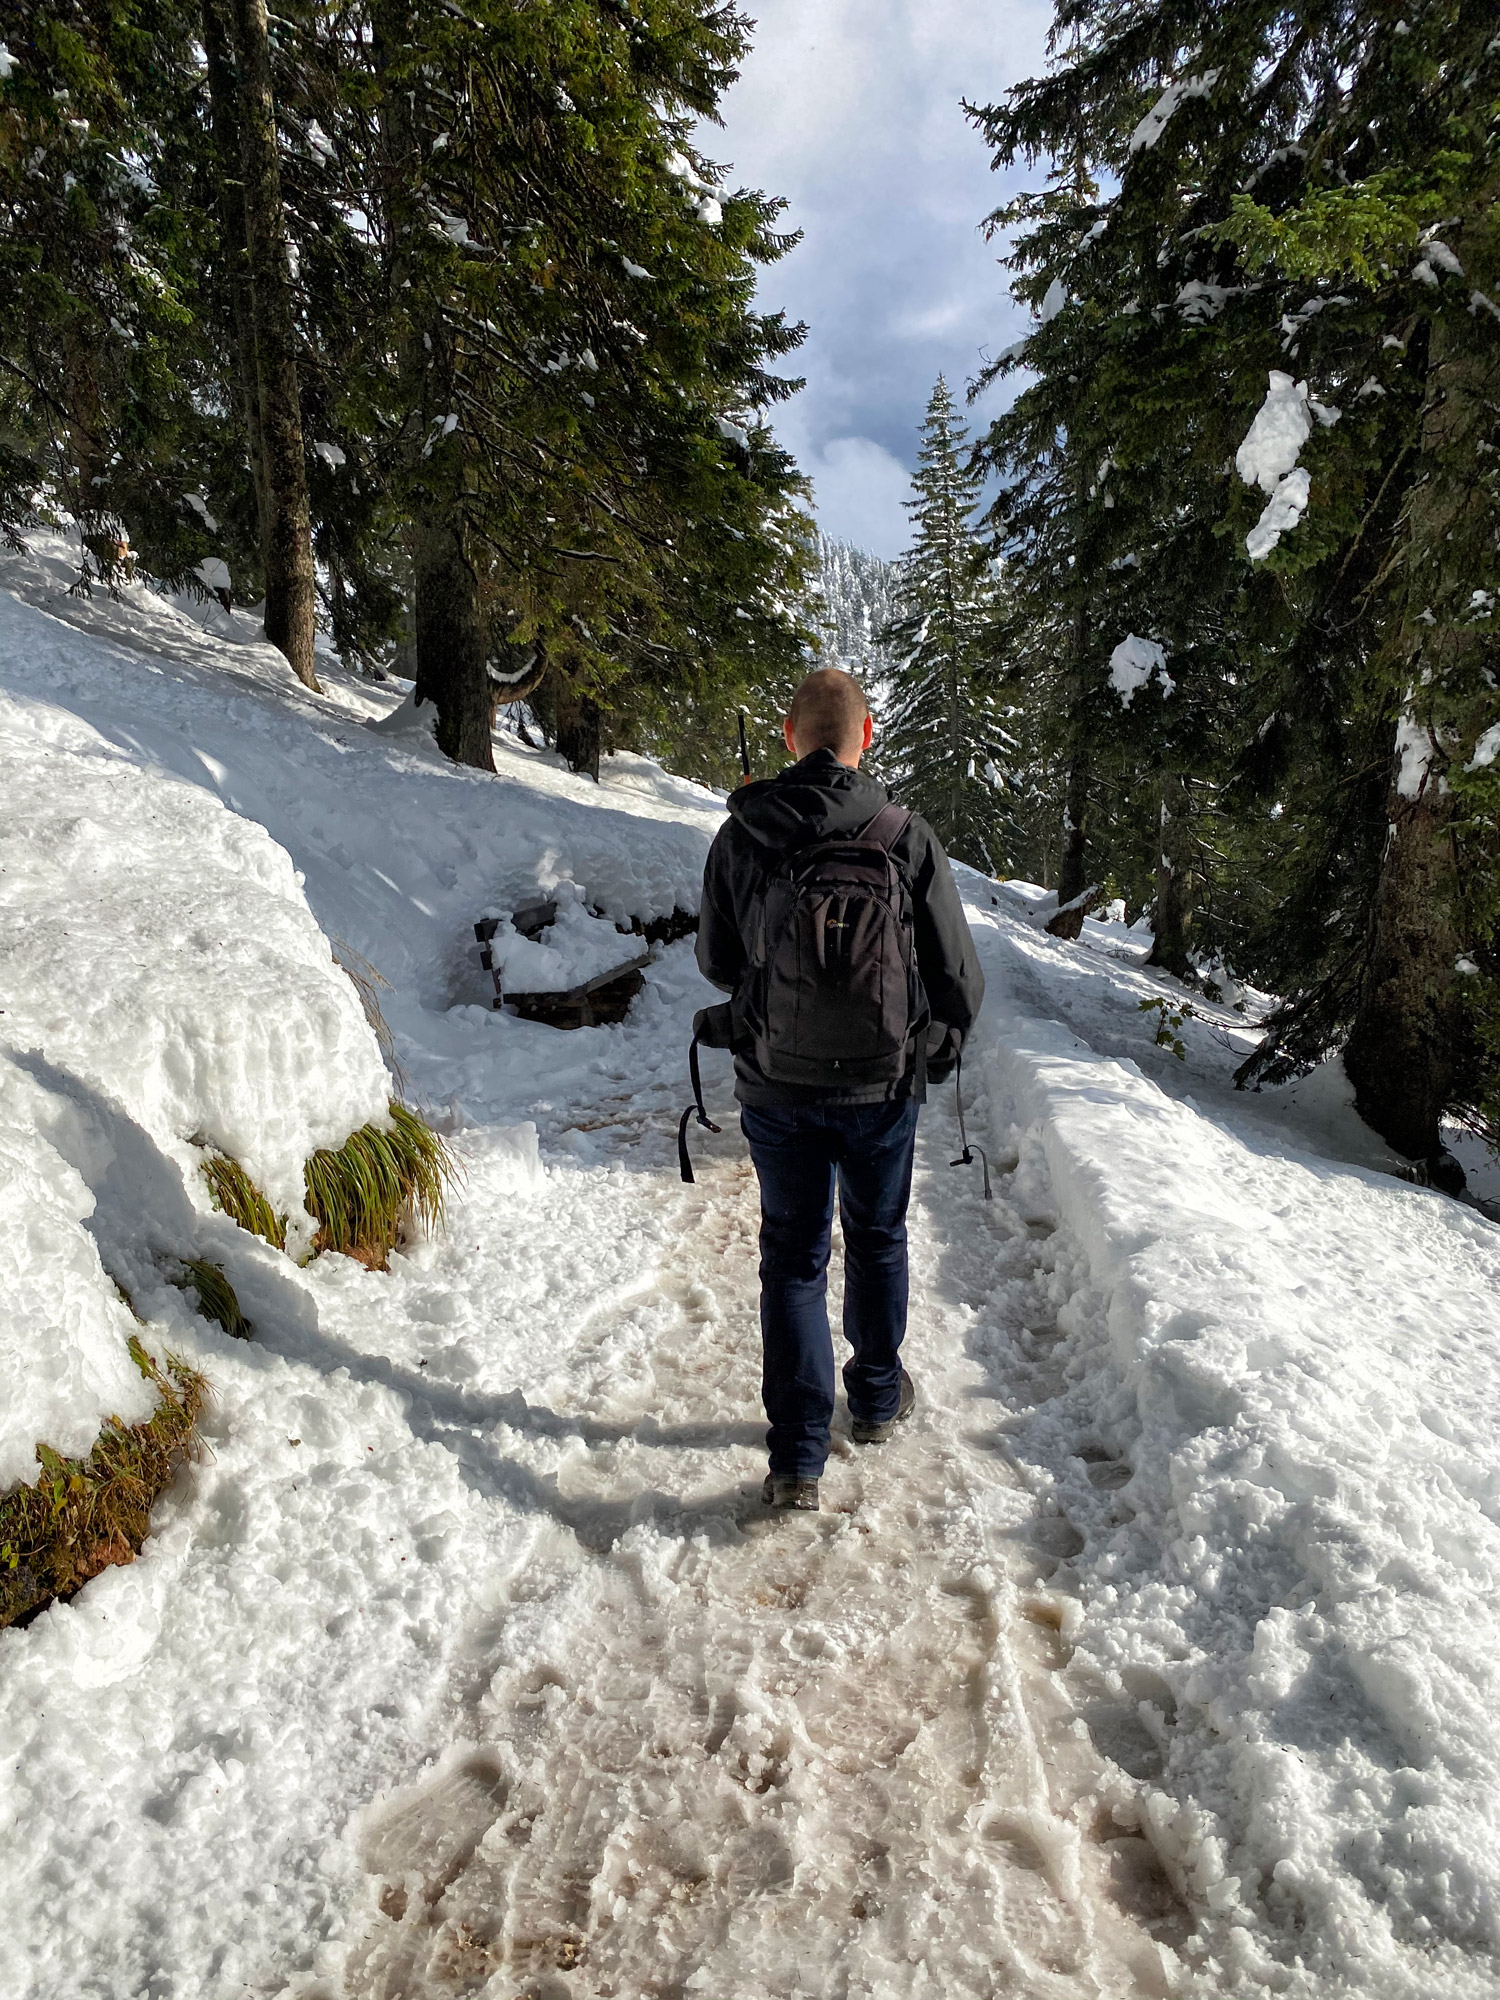 Doen in Berchtesgadener Land: Naar de top van de Predigtstuhl